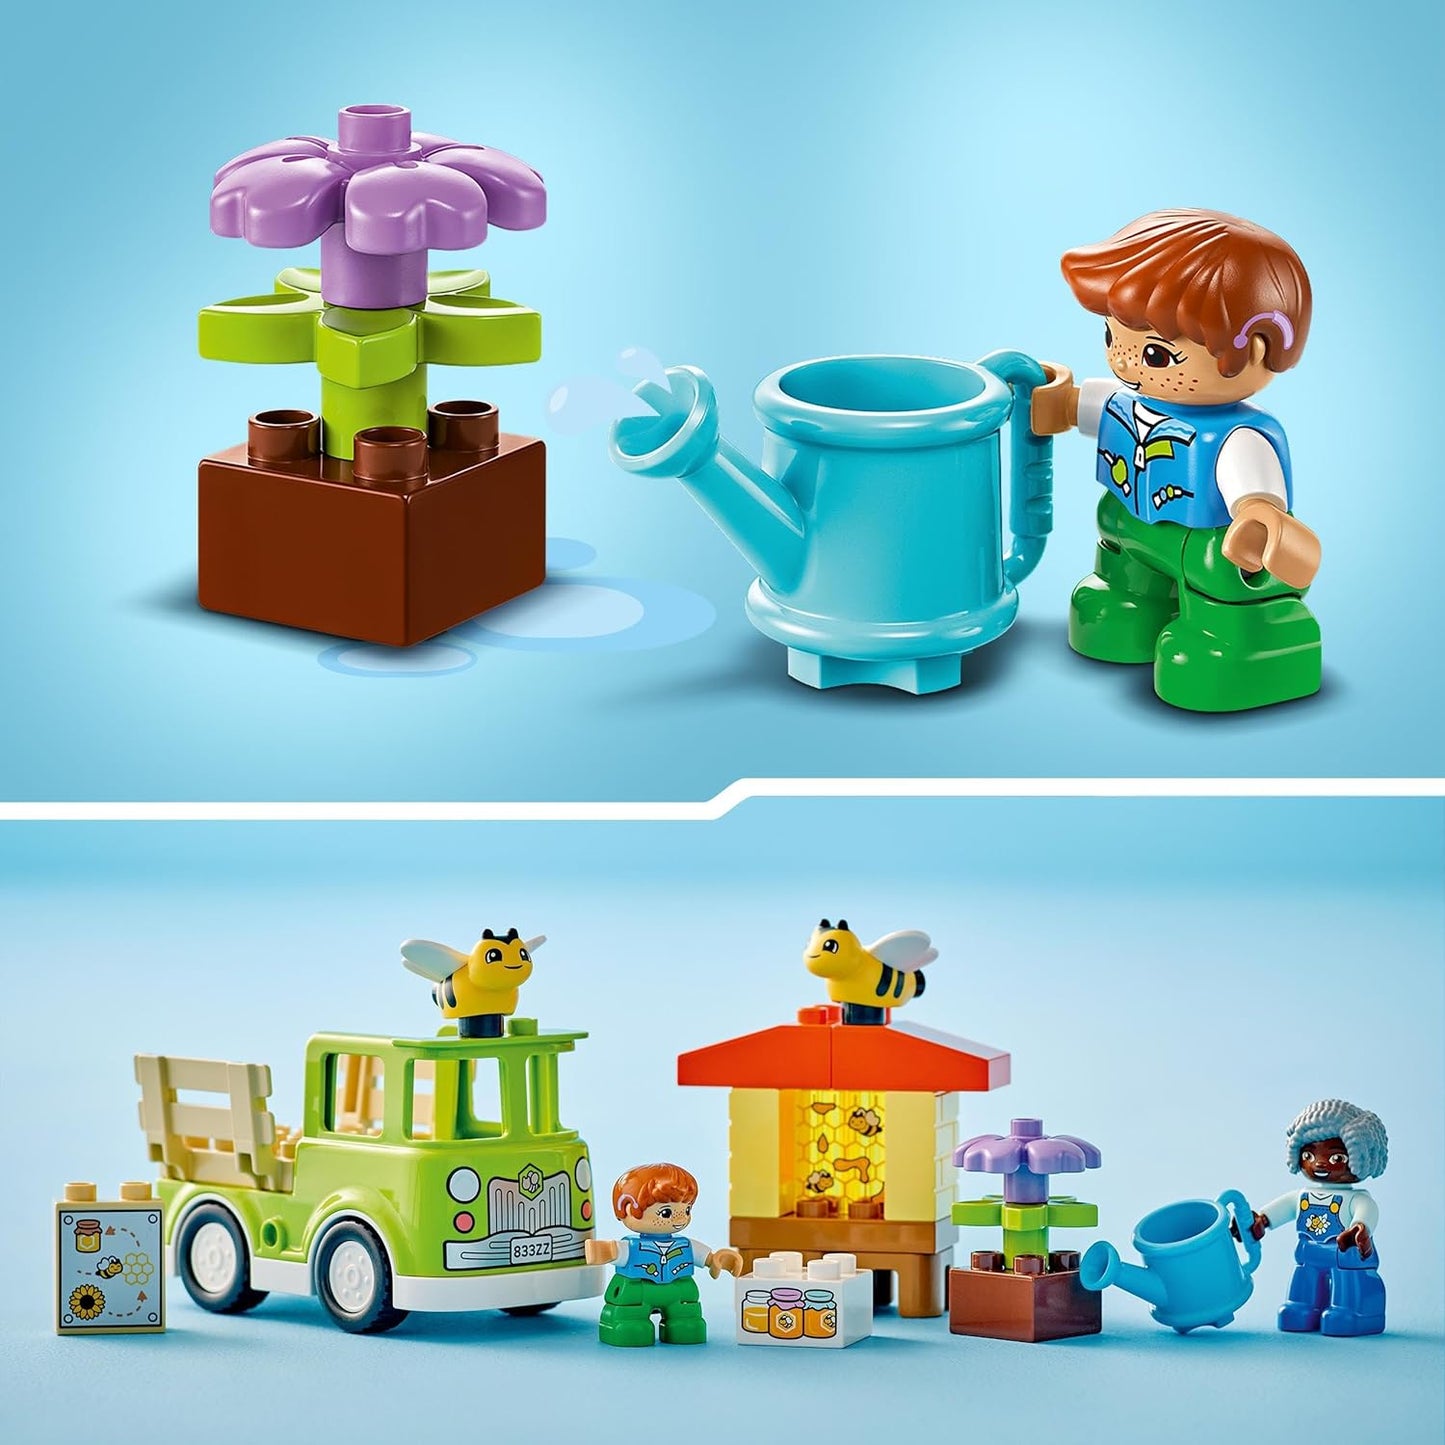 LEGO DUPLO Town Cuidando de Abelhas e Colméias, Brinquedo de Aprendizagem Infantil com Caminhão Dirigível, Colméia e 2 Figuras, Brinquedos de Desenvolvimento Infantil e Atividades, Presentes para Crianças, Meninos e Meninas com 2 anos ou mais 10419